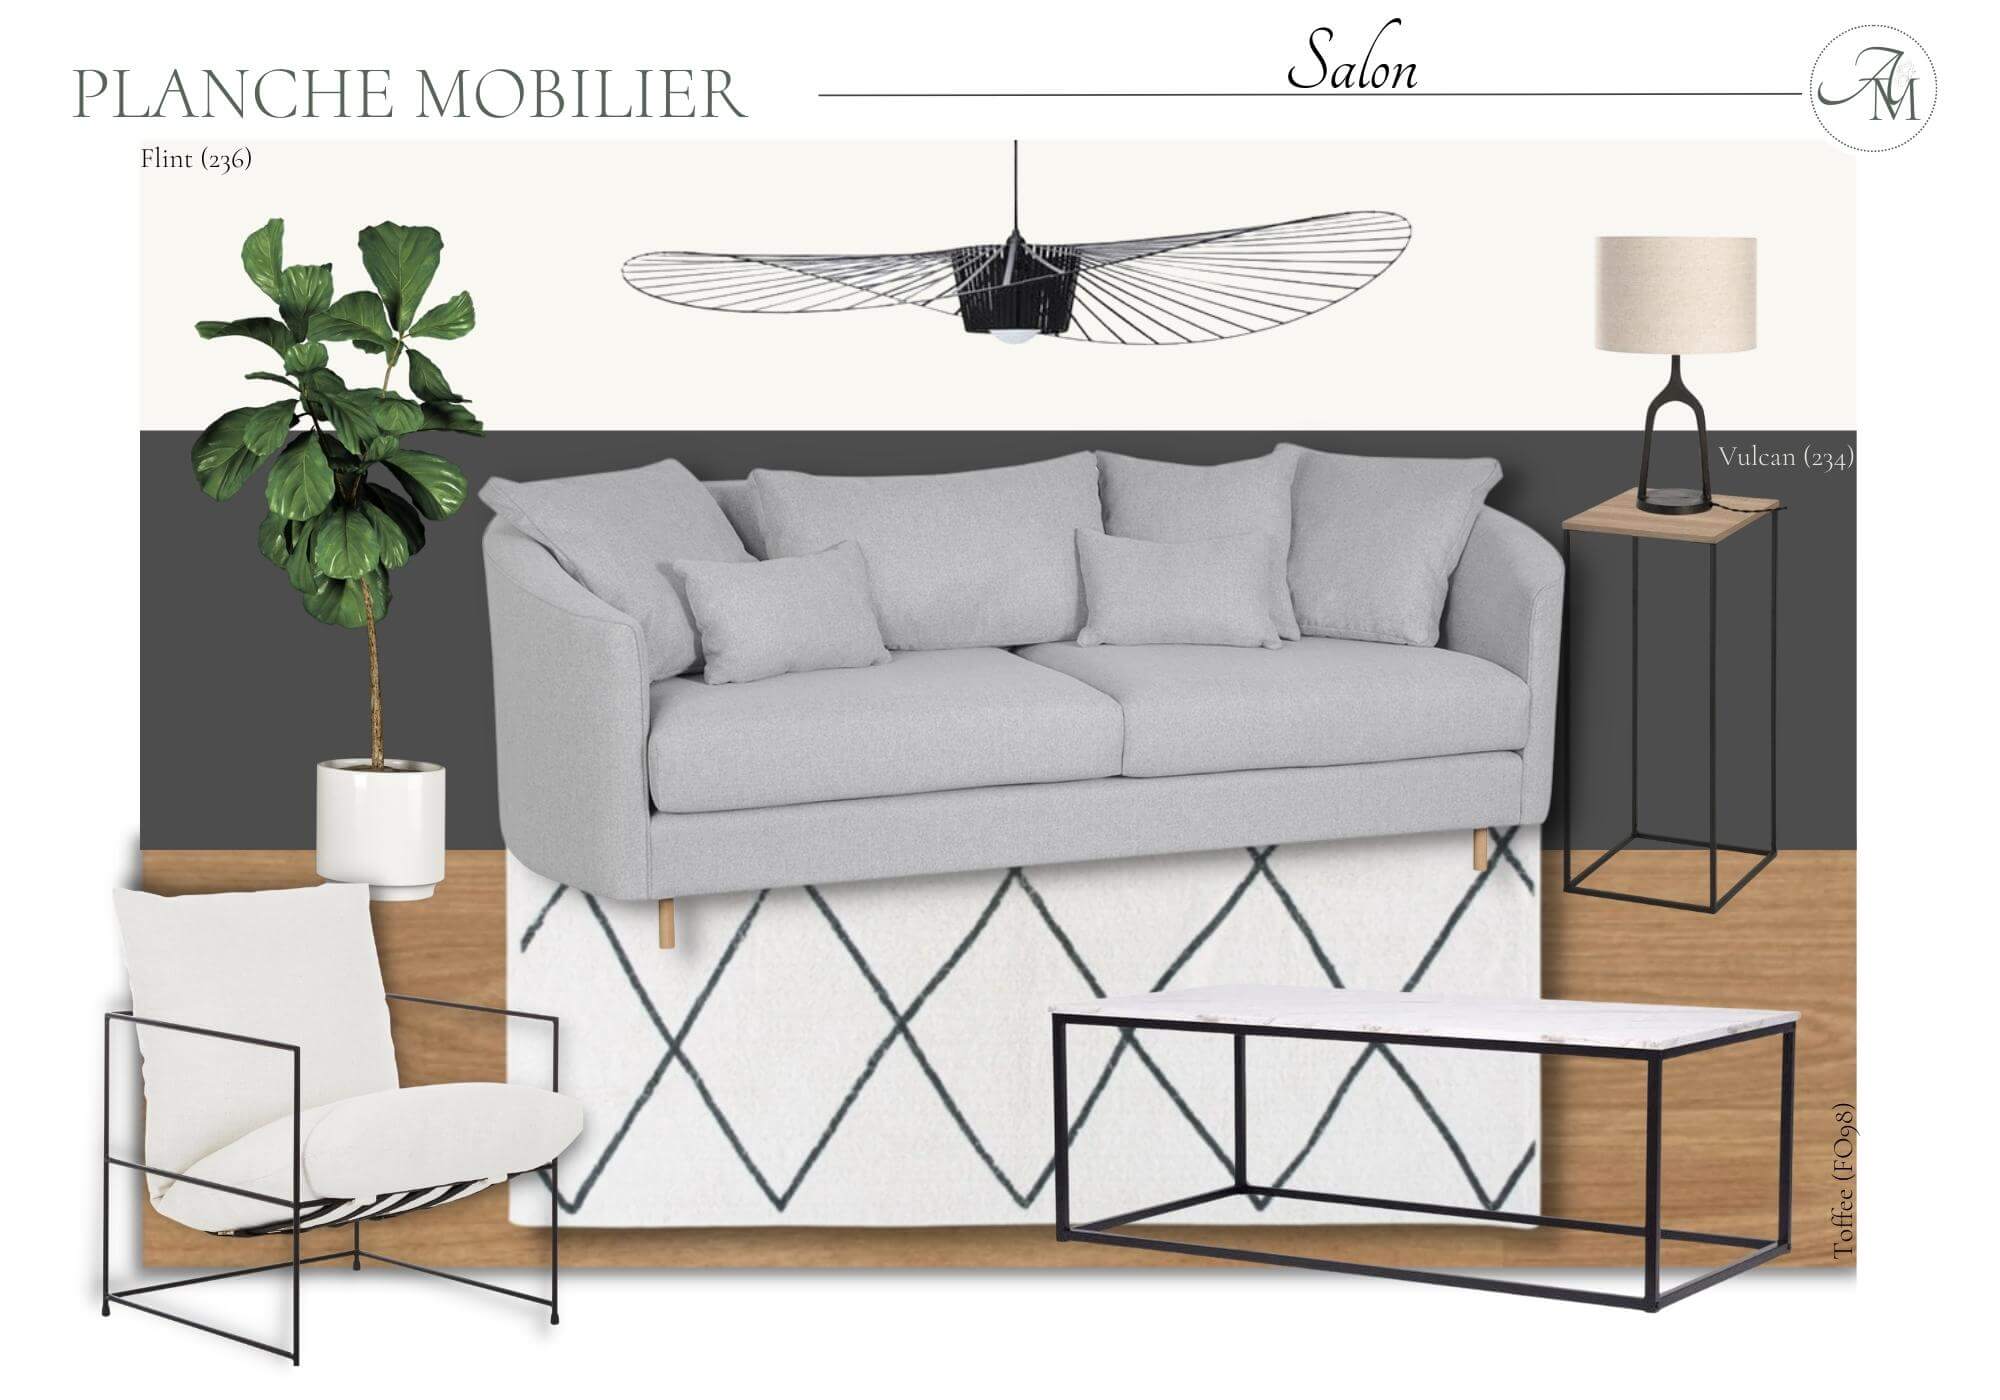 planche mobilier salon - achromatique - moderne